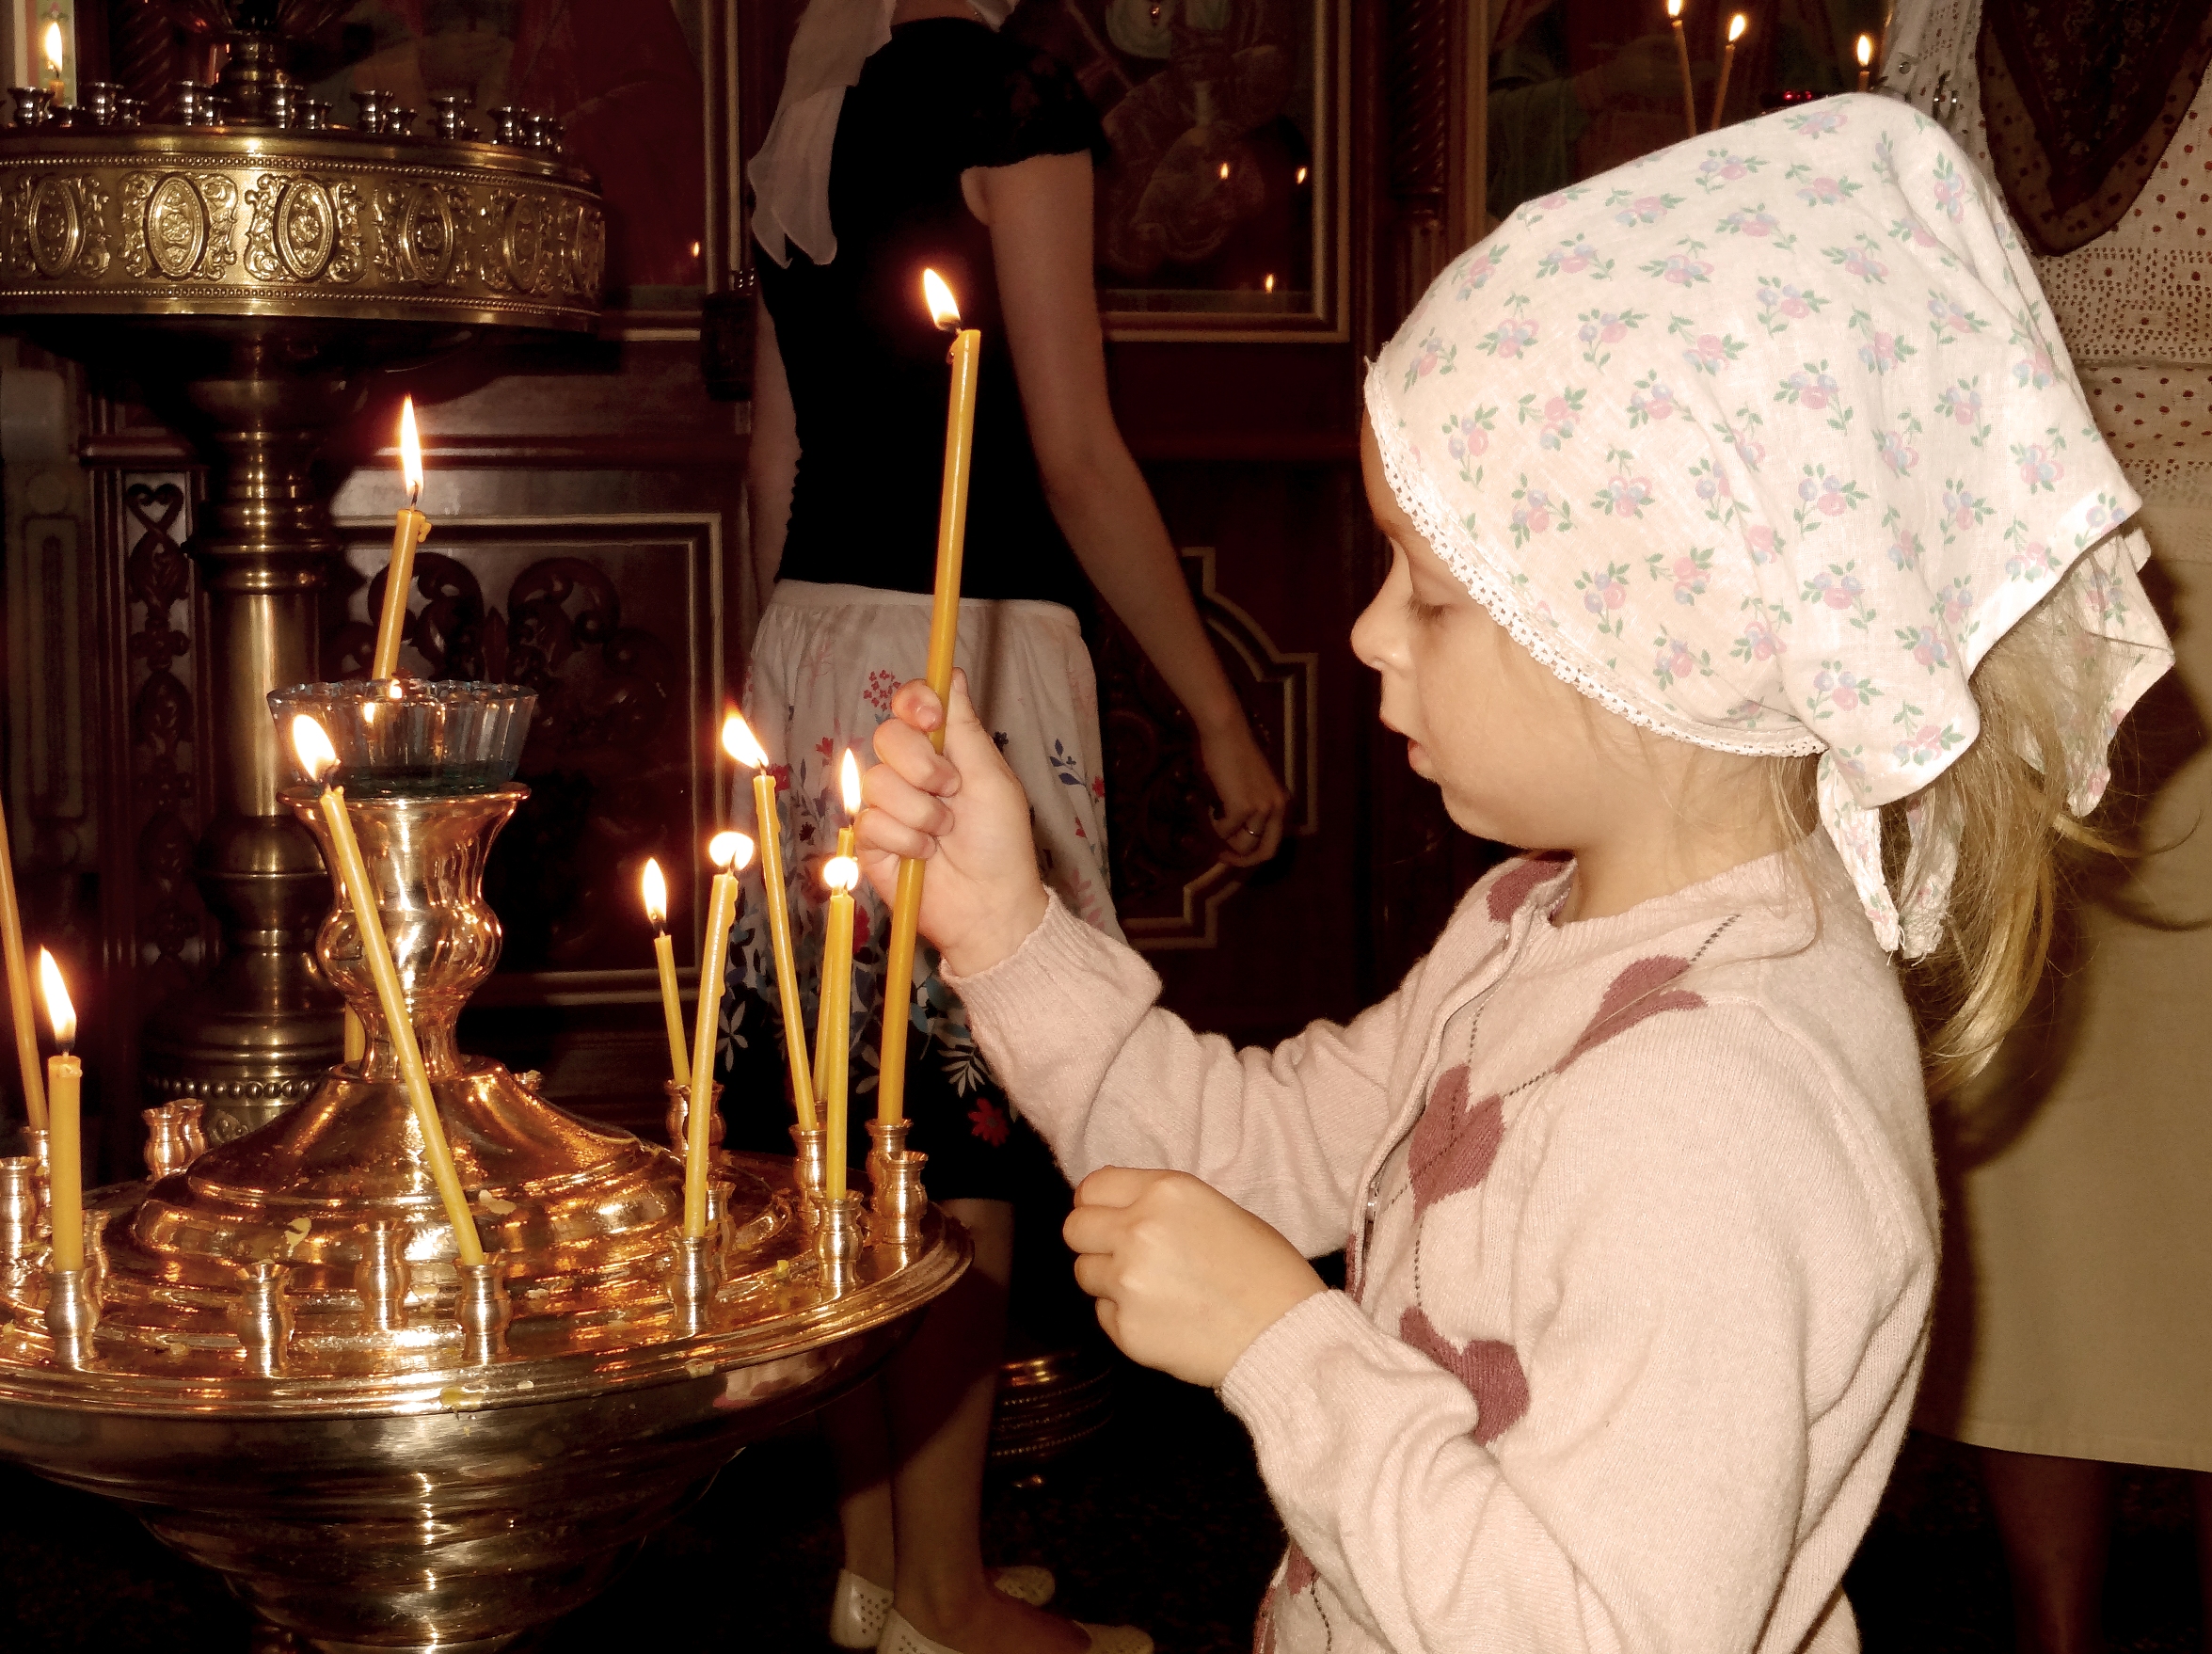 Фото в храме со свечой